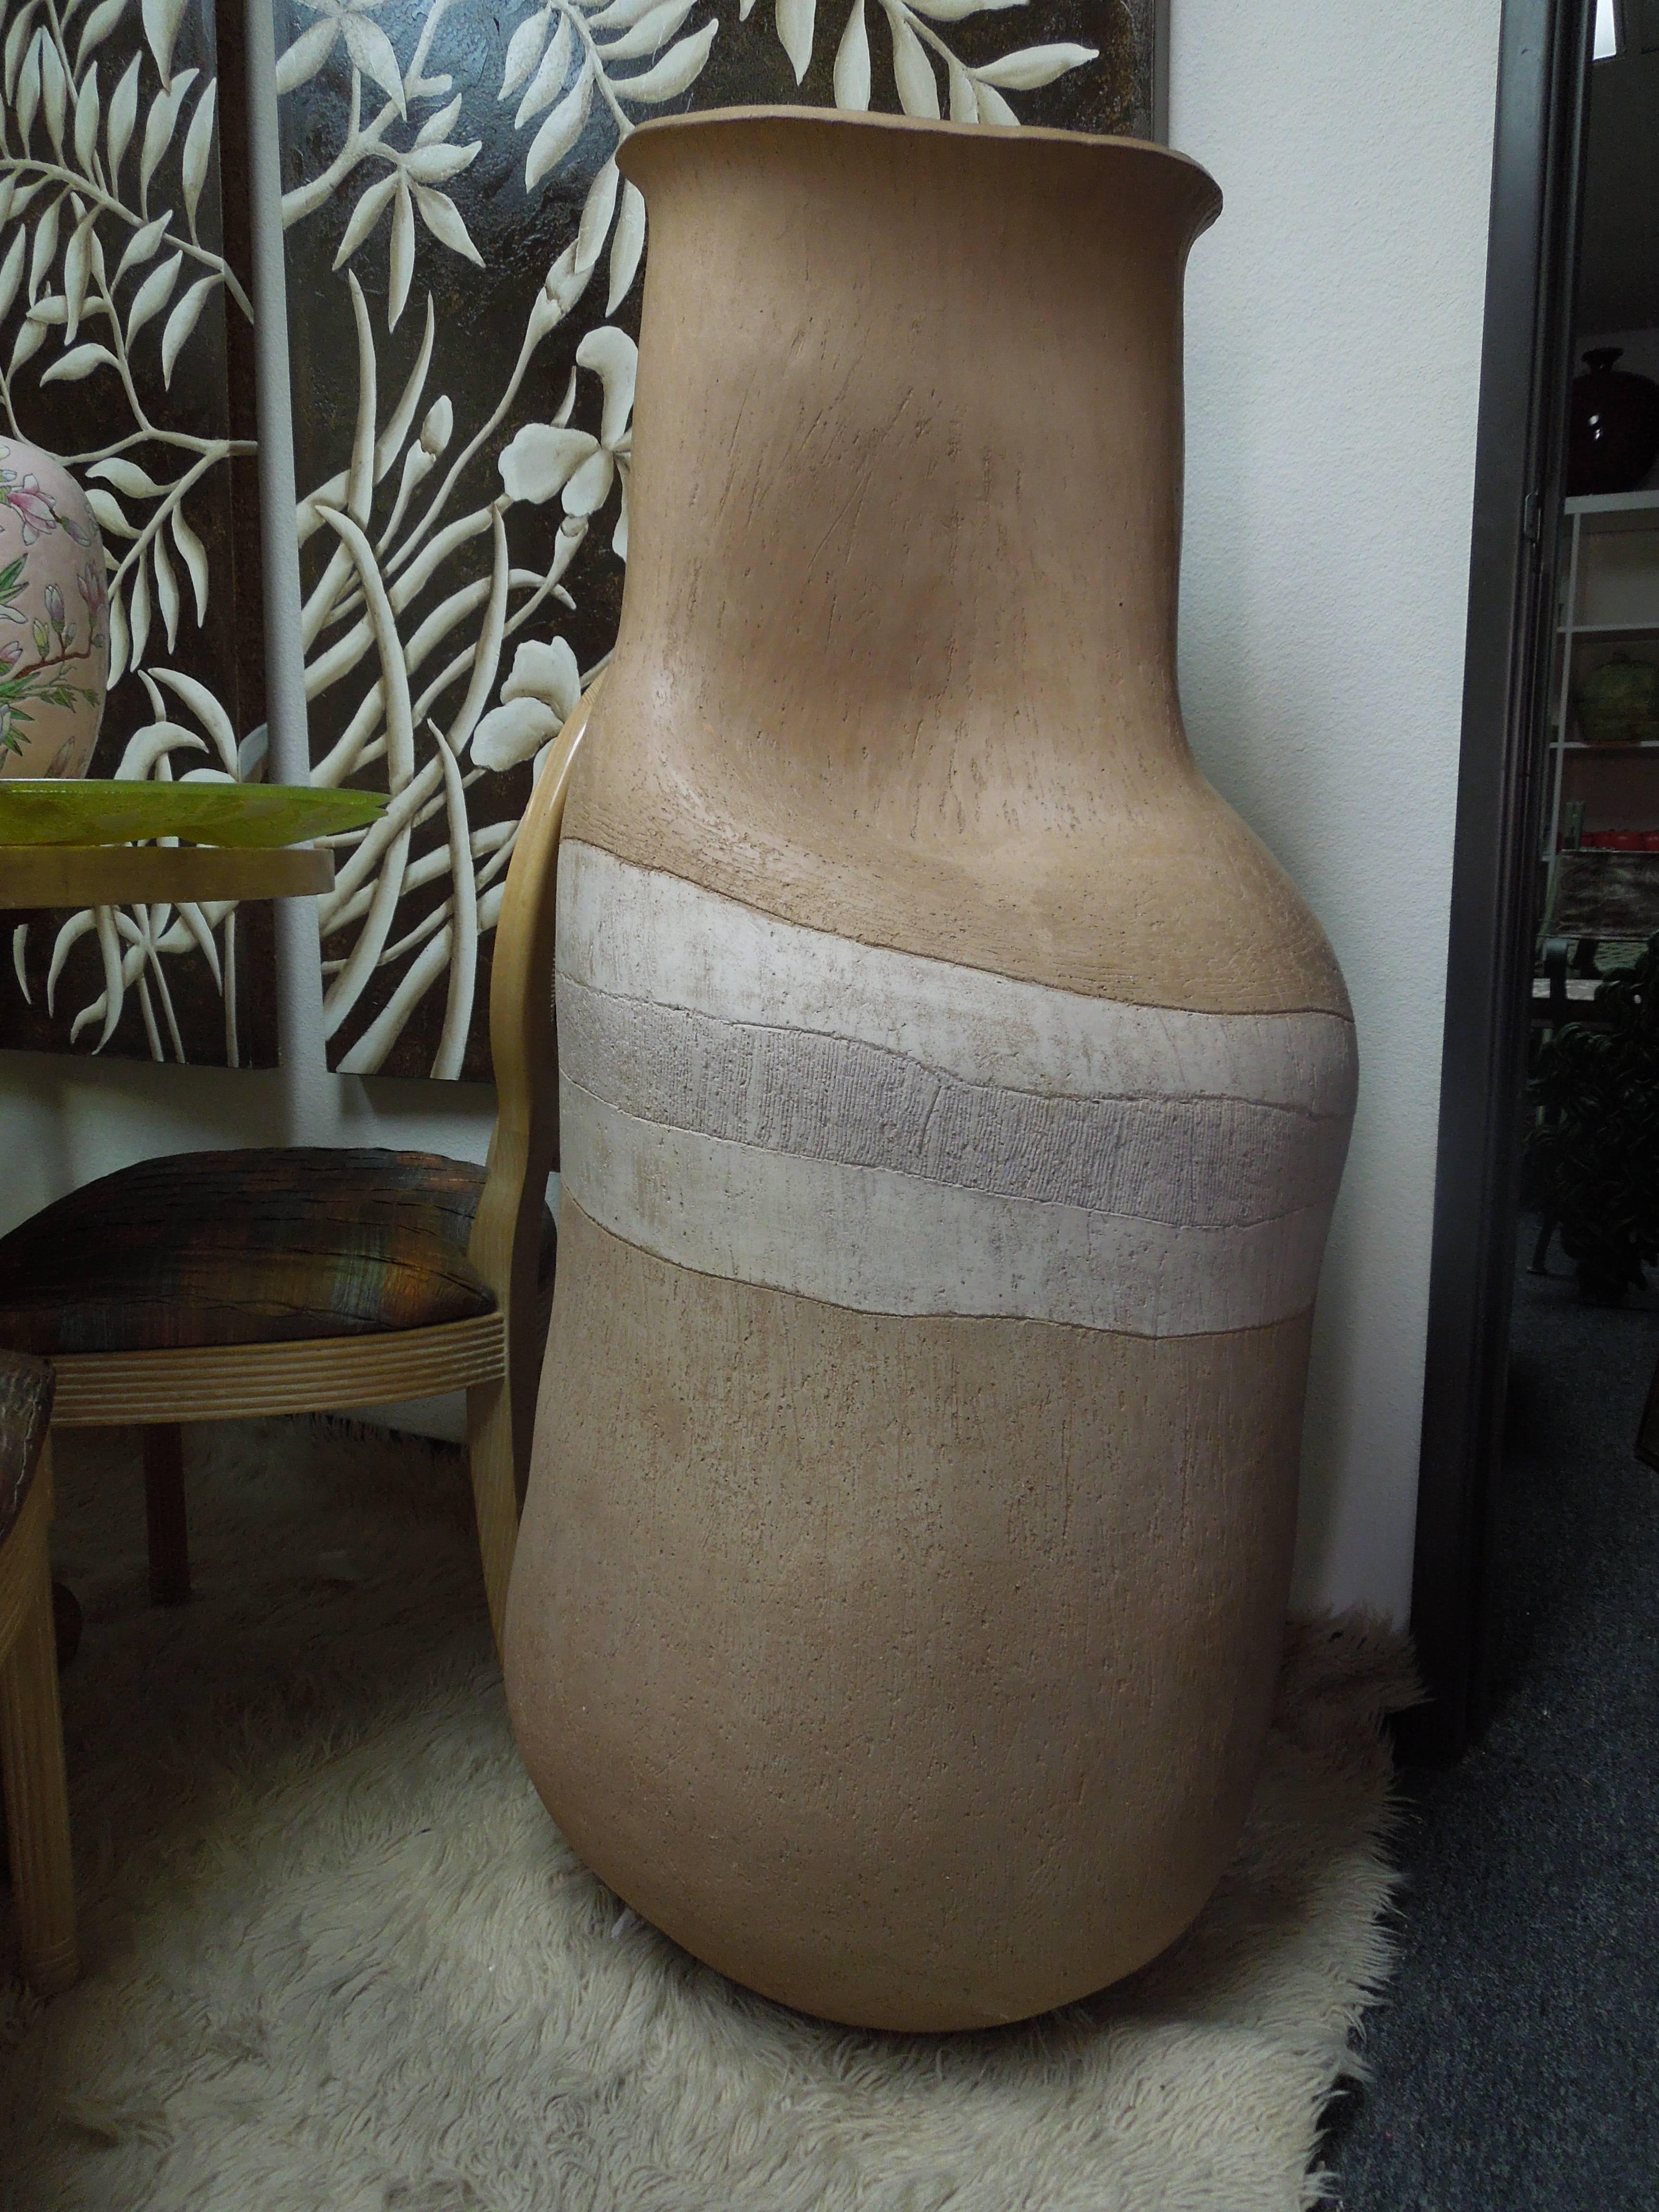 Monumental Organic Floor Vase from Steve Chase Estate 1